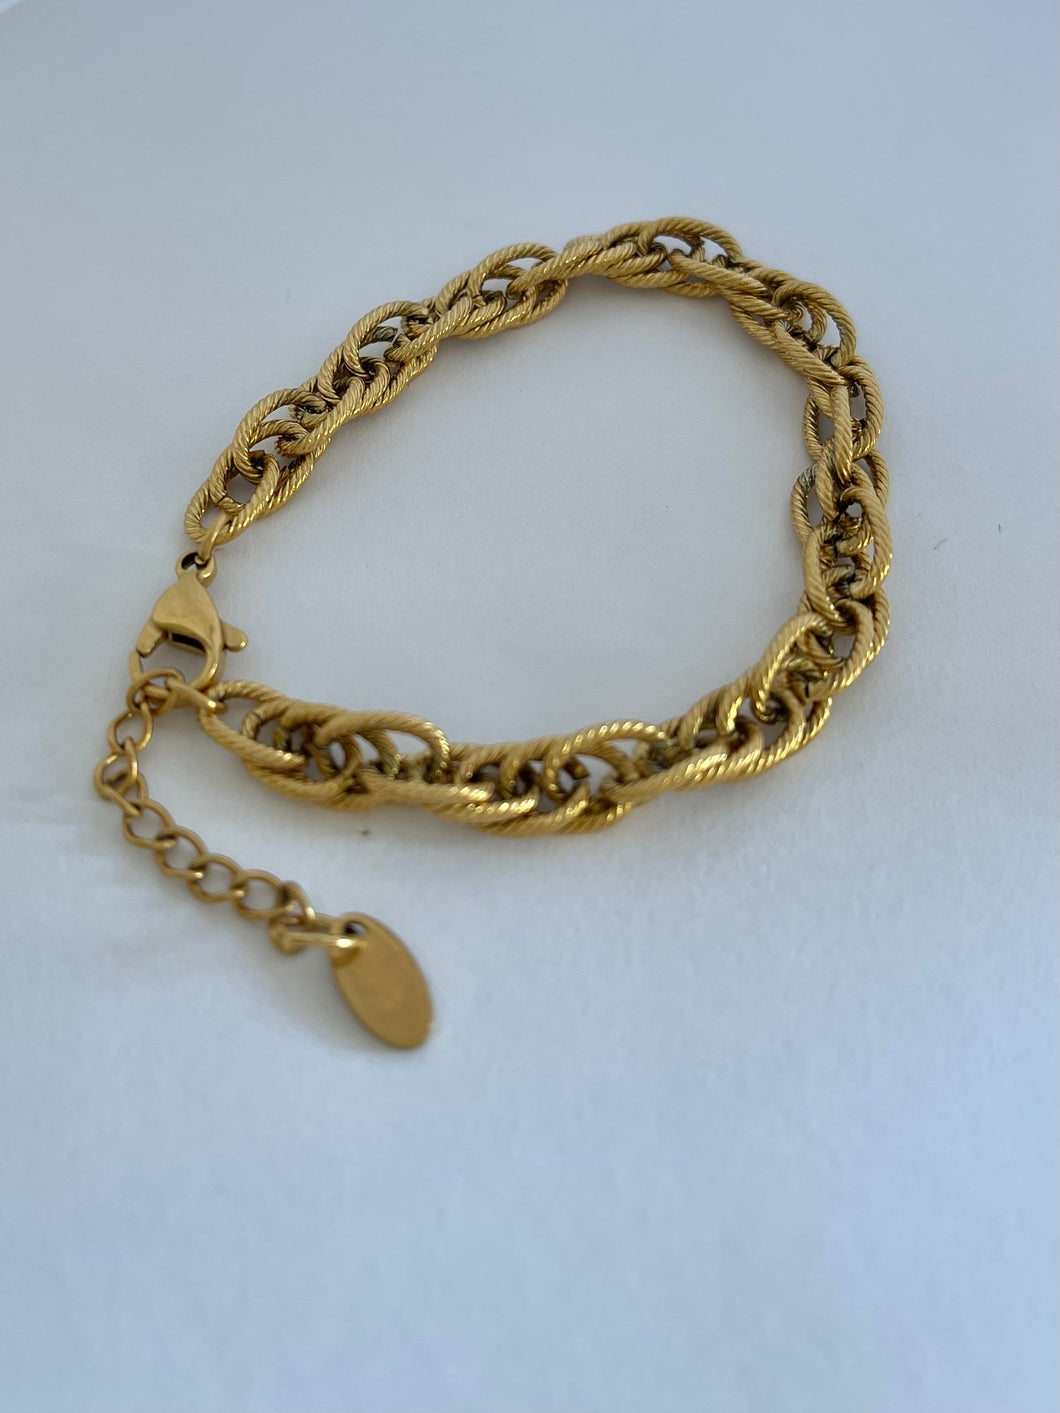 Brushed gold bracelet